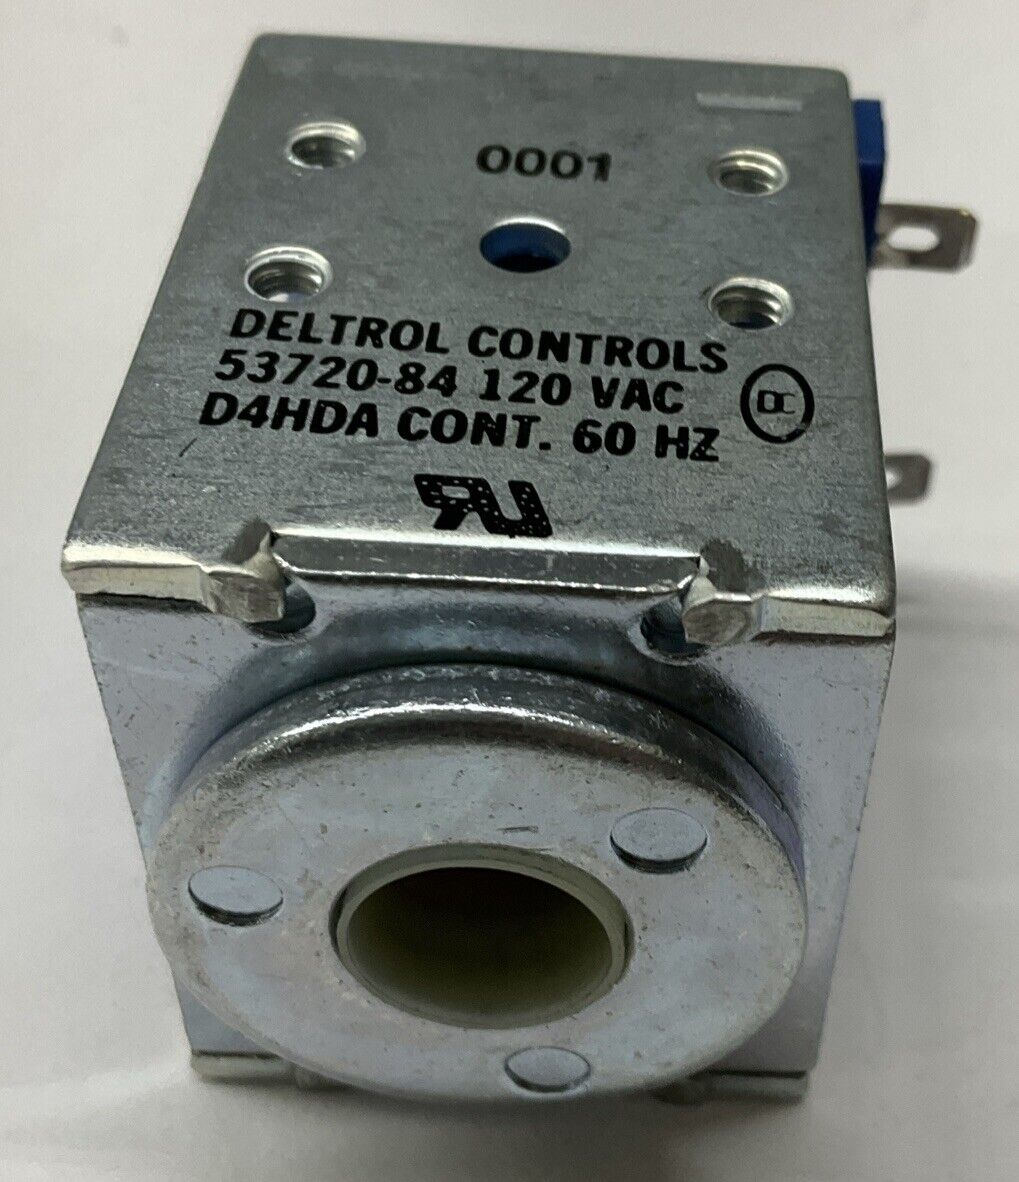 Deltrol Controls 53720-84 120VAC Solenoid and Stem (BL289)